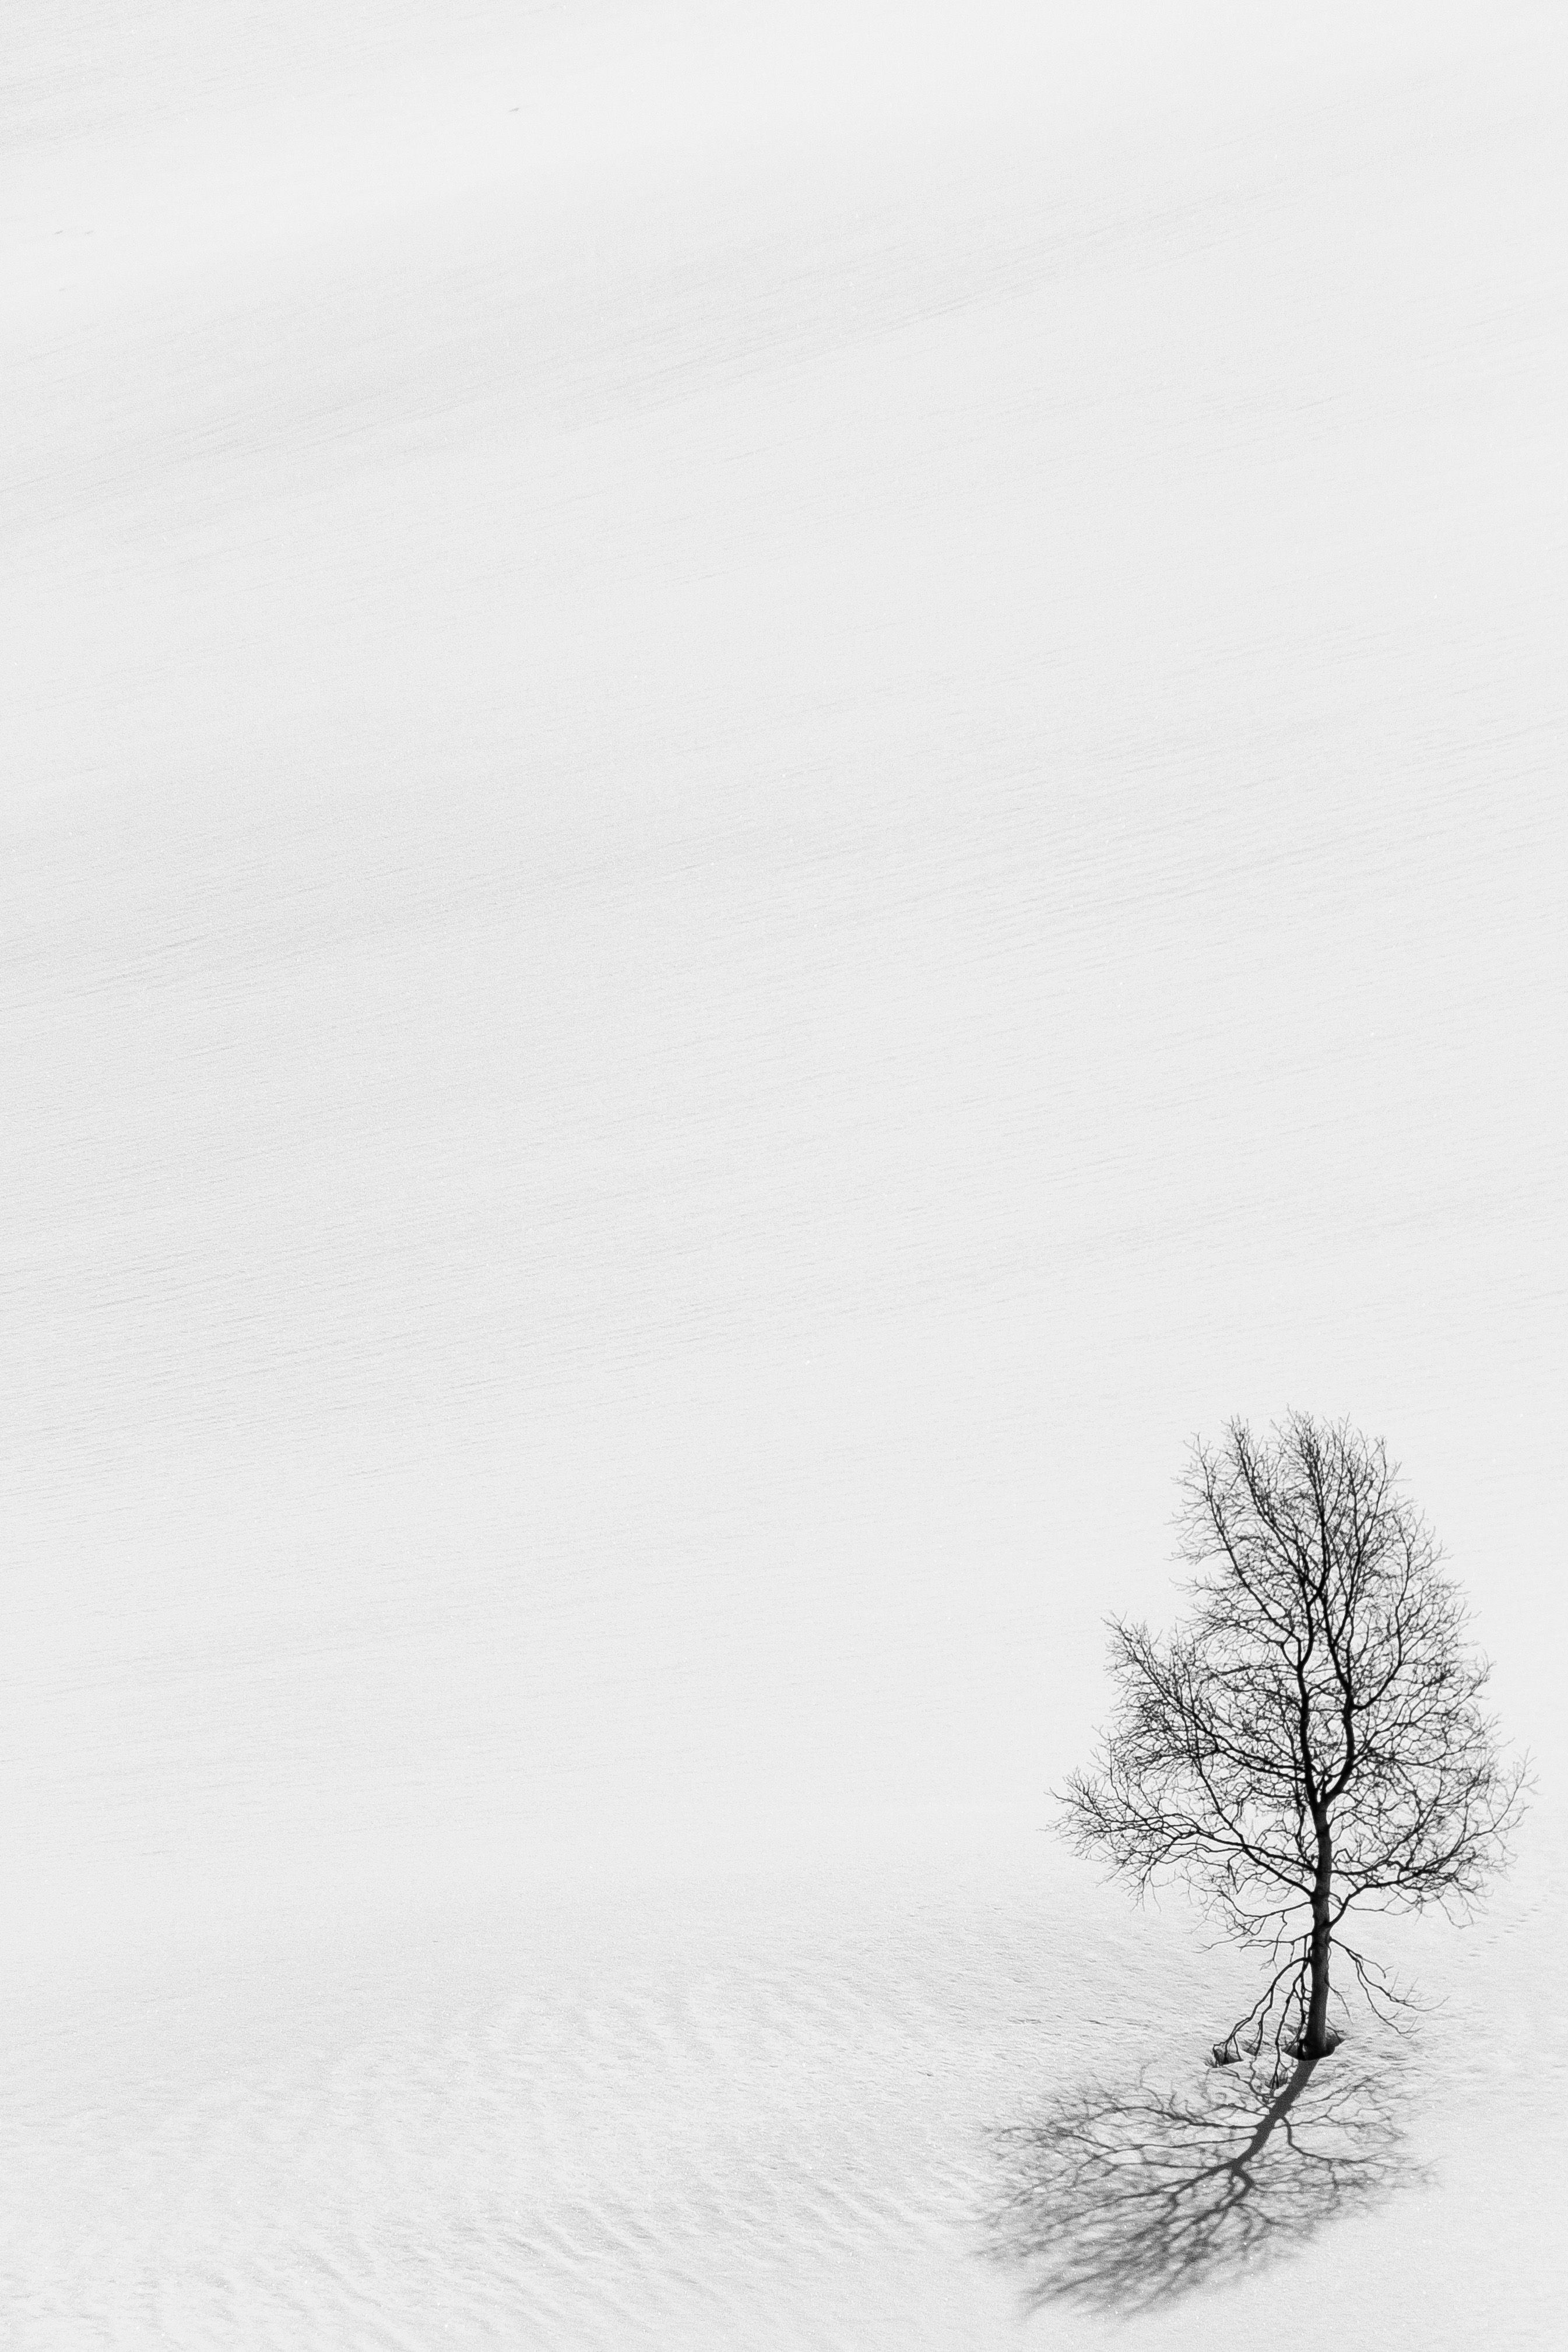 chb, winter, nature, snow, wood, tree, minimalism, bw Desktop Wallpaper